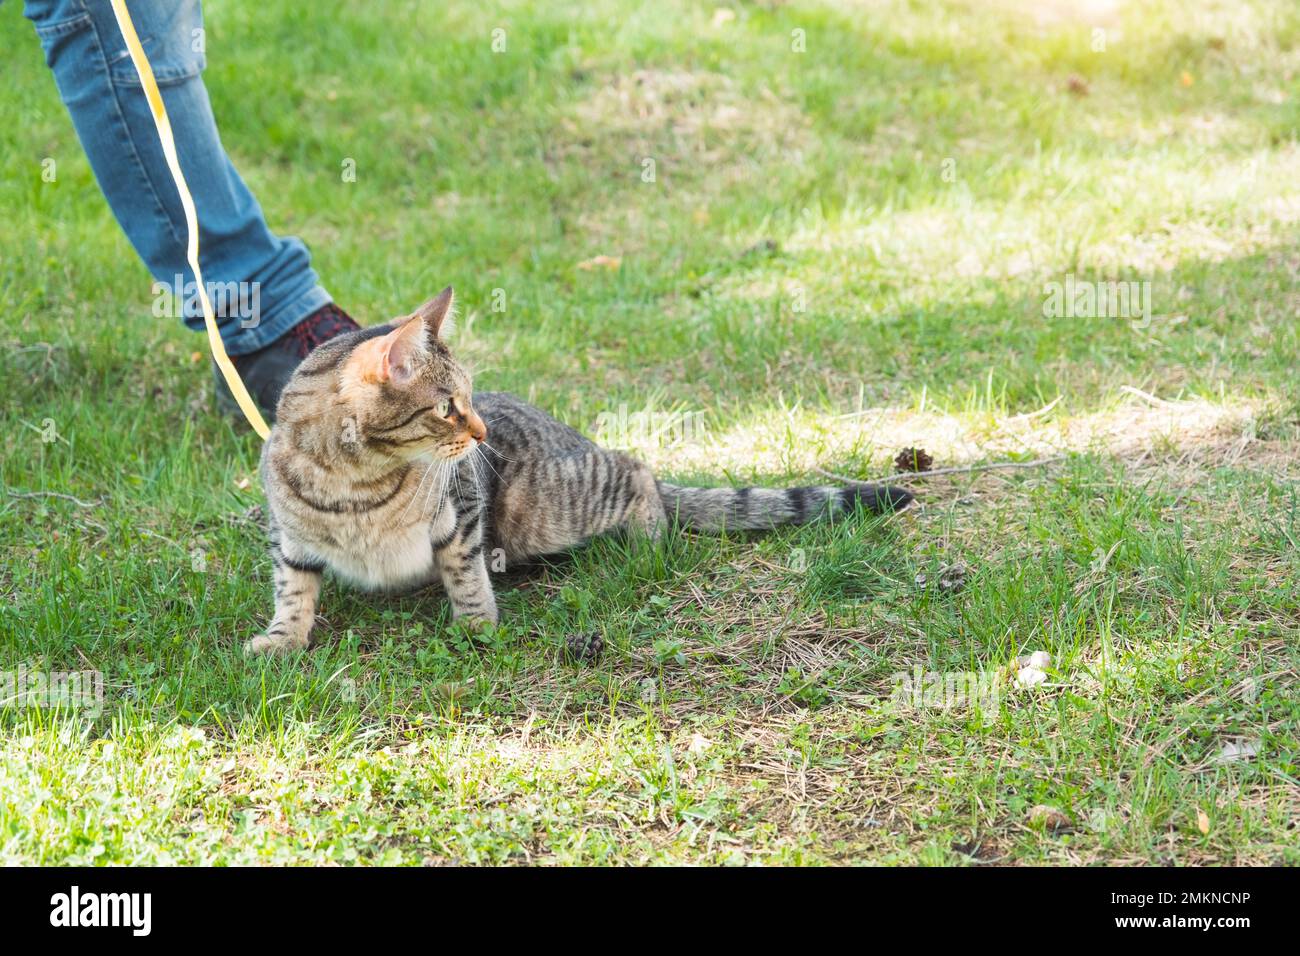 Mit einer Hauskatze mit dem Besitzer an einem gelben Gurtzeug spazieren gehen. Die Tabby Katze, die die Hand eines Menschen im Freien streichelt, versteckt sich im grünen Gras, vorsichtig und Stockfoto